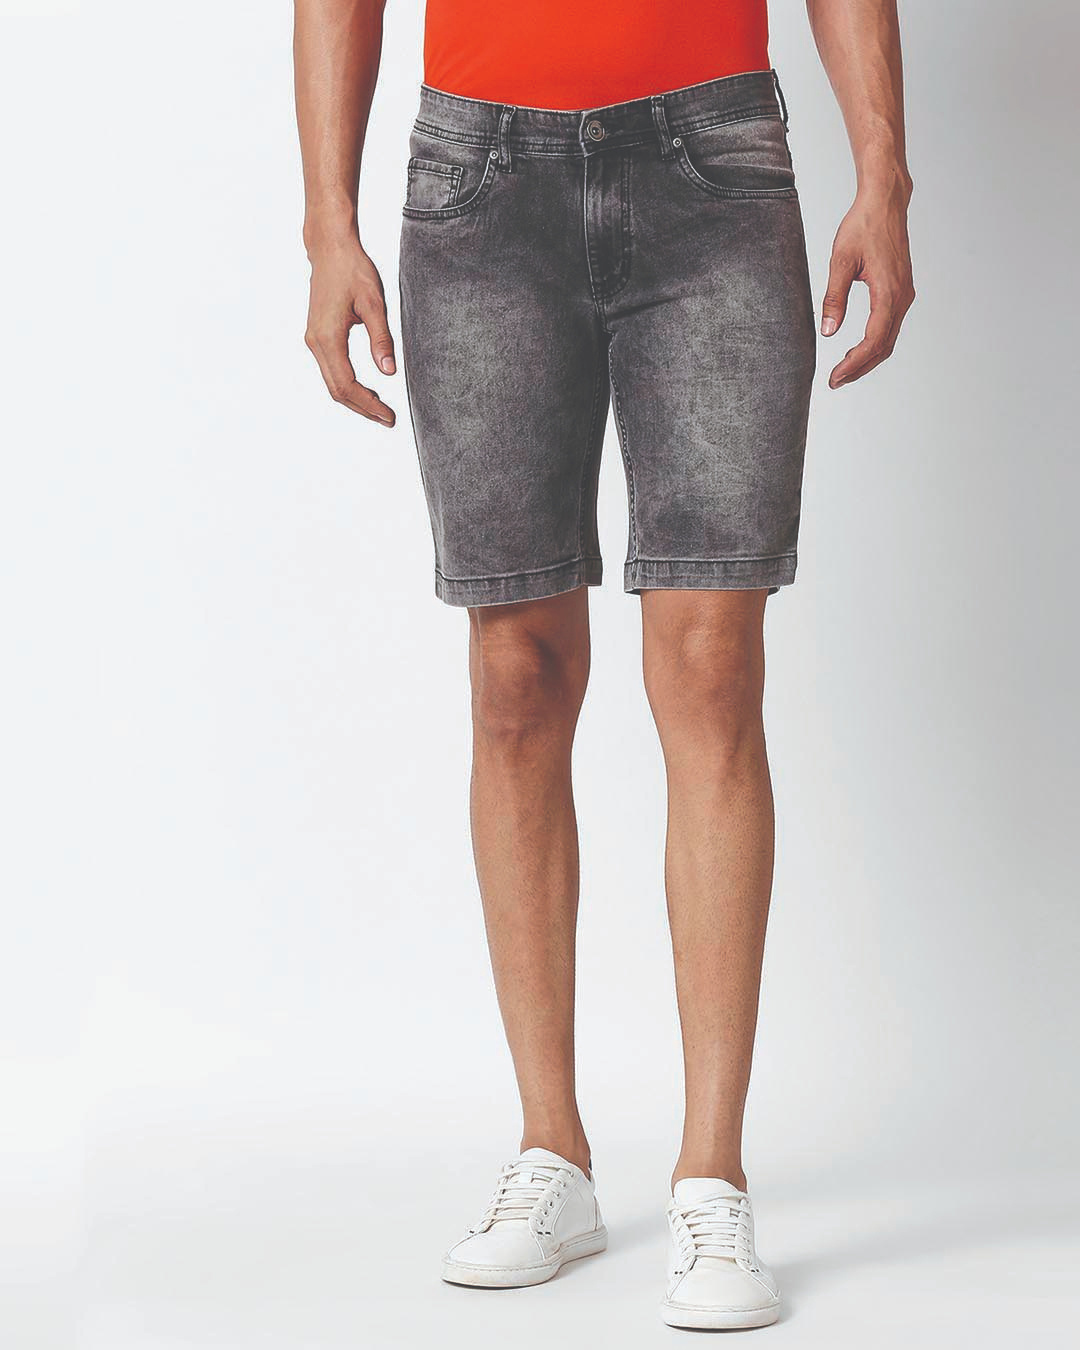 Buy Men's Grey Slim Fit Faded Denim Shorts for Men Grey Online at Bewakoof